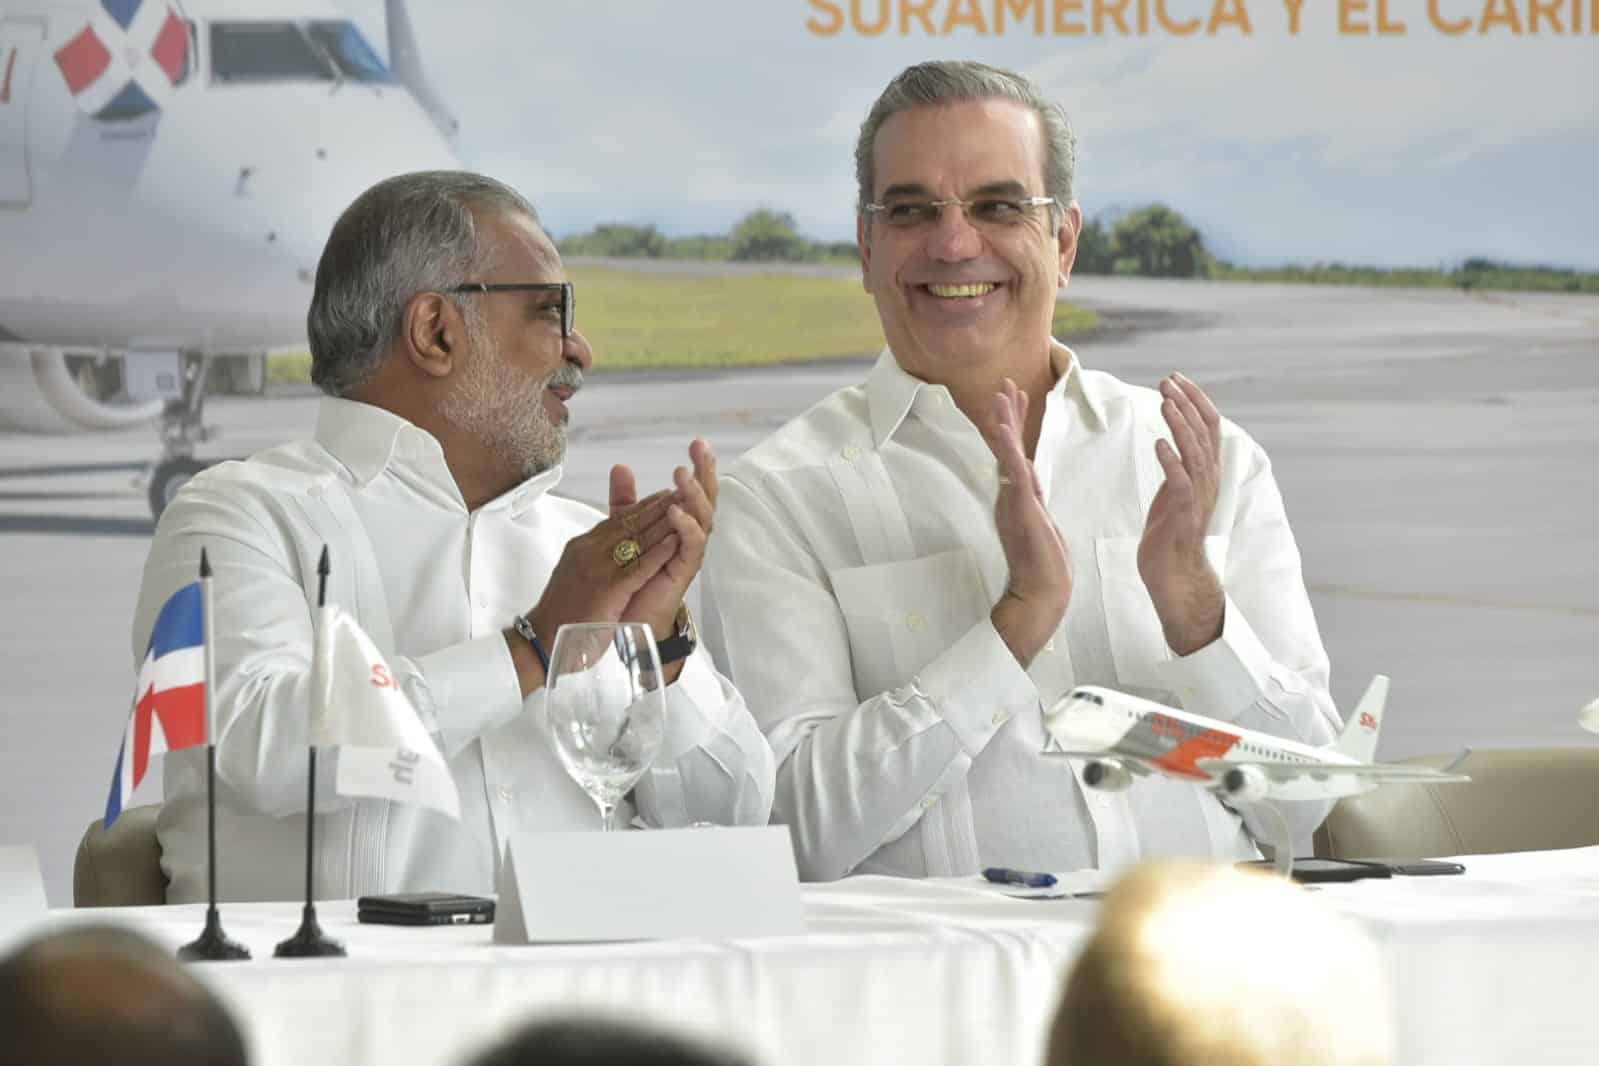 Presentación de la expansión de las operaciones y nueva flotilla de aviones de la línea Sky High Dominicana. 